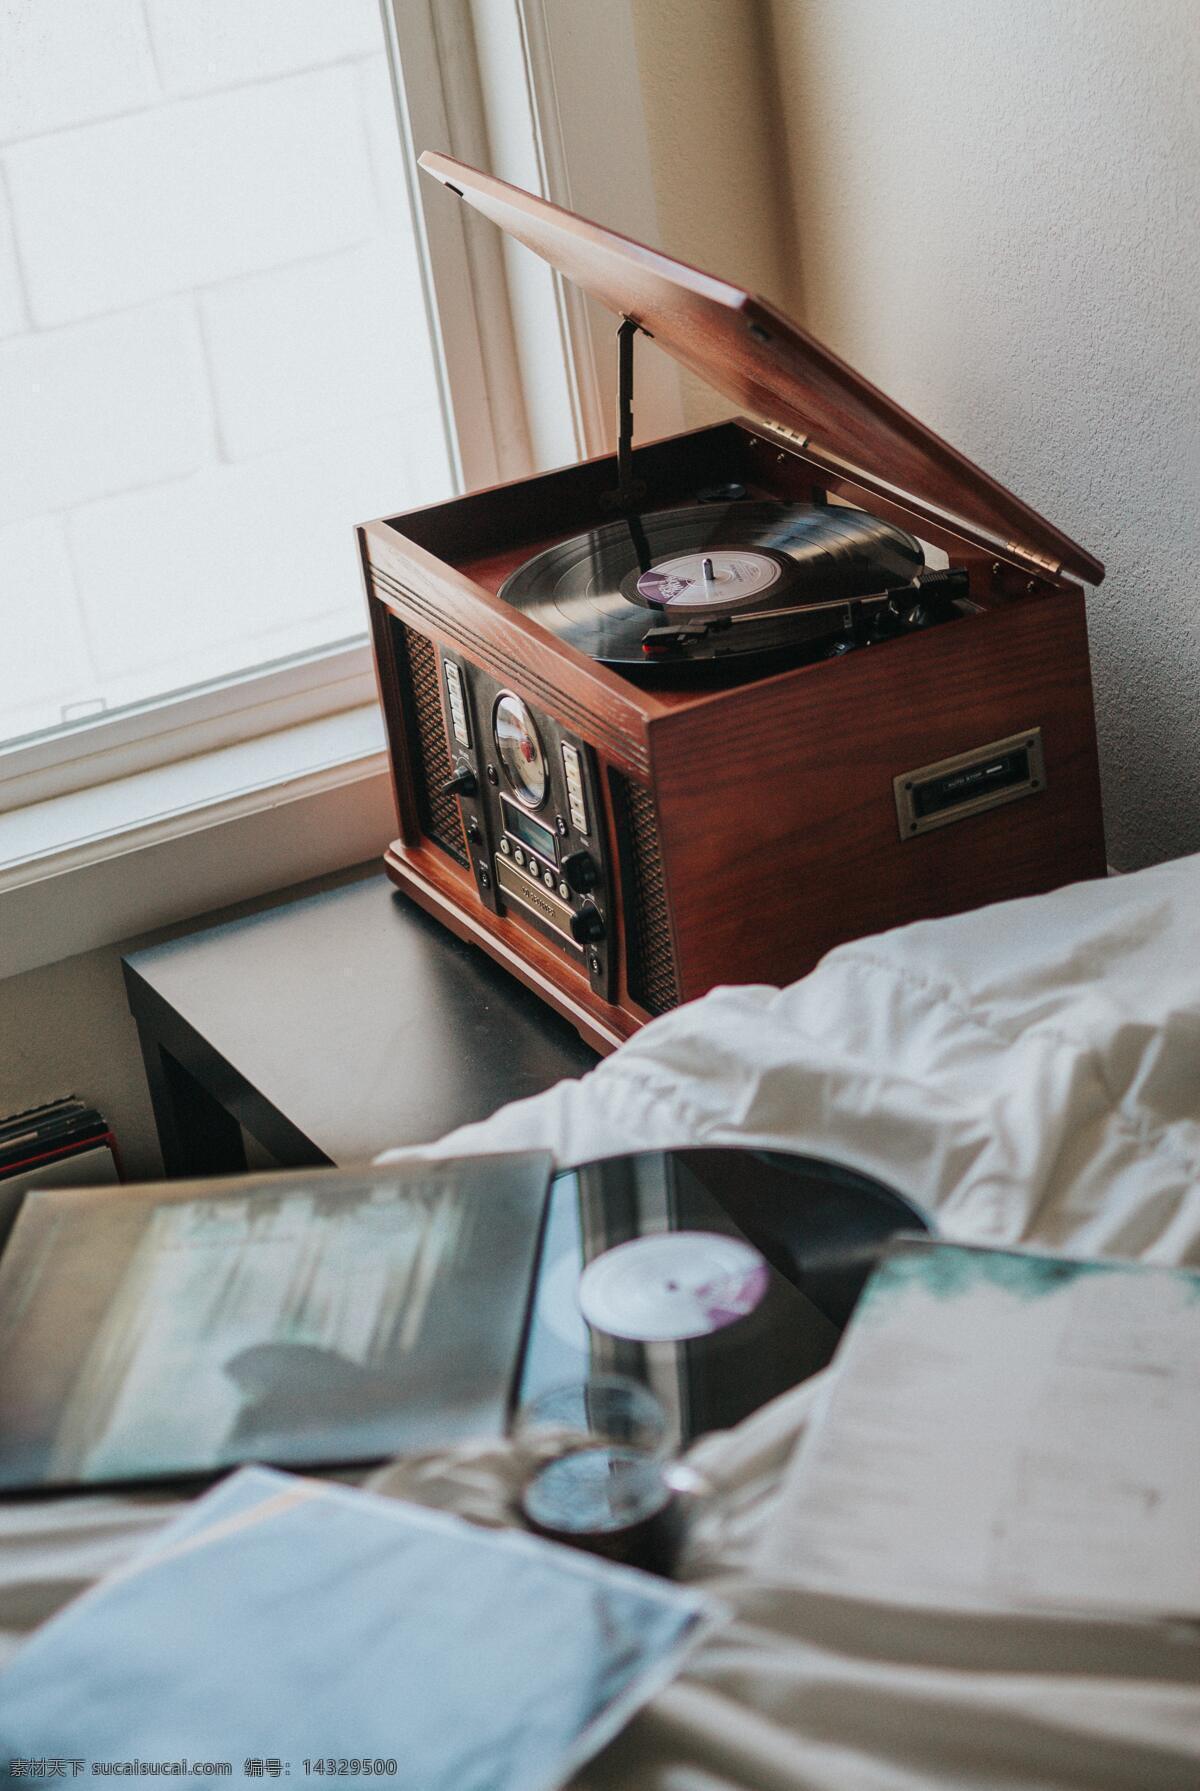 留声机 碟片 音乐 放映机 老物件 老古董 物件 古董 唱片机 唱片 生活百科 生活素材